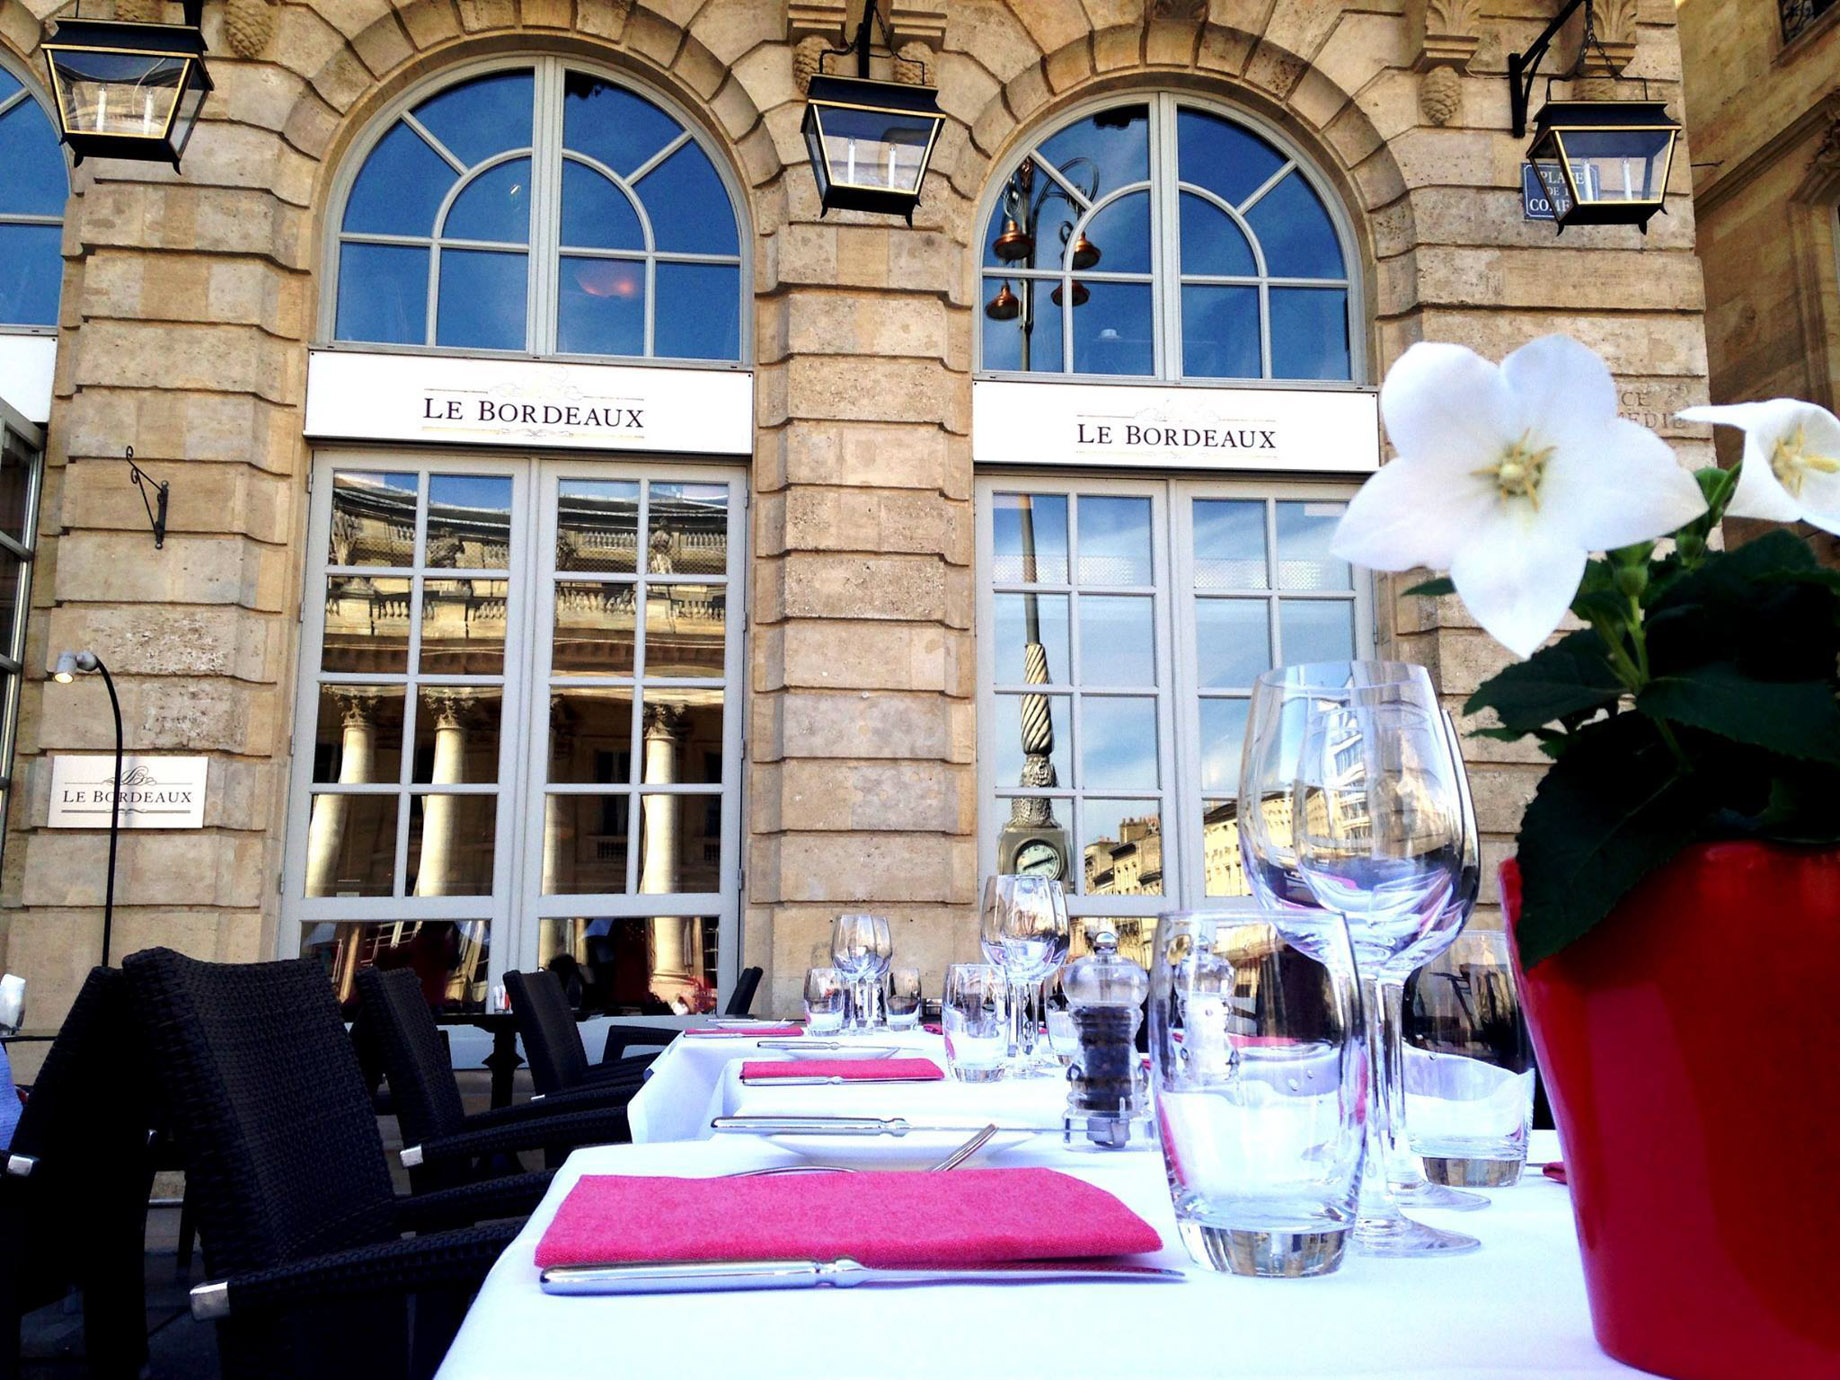 InterContinental Bordeaux Le Grand Hotel – Bordeaux, France – Le Bordeaux